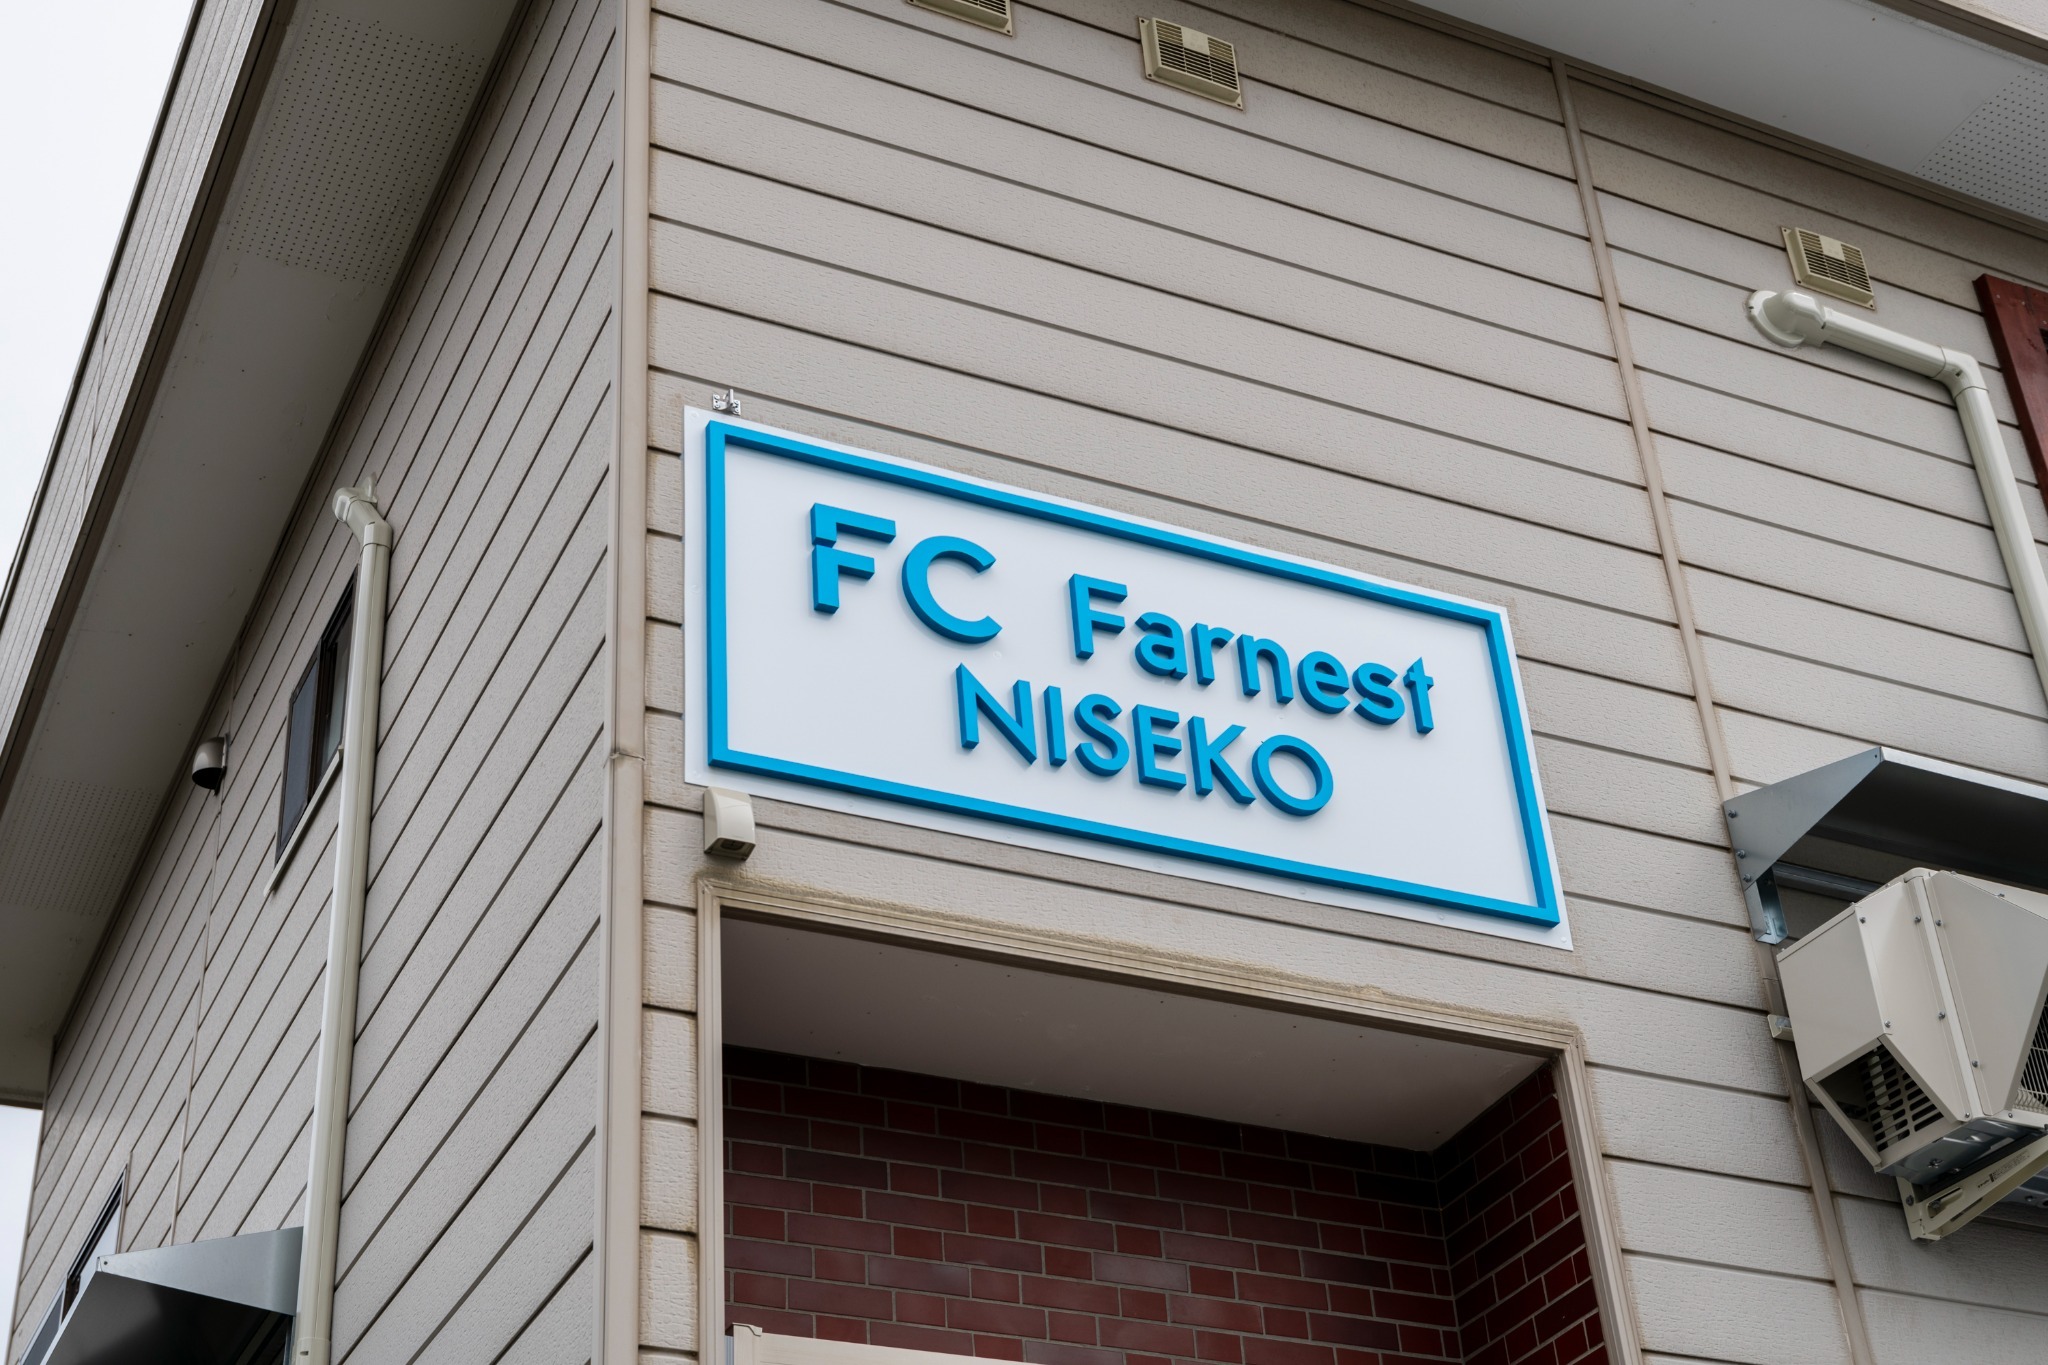 FC Farnest Niseko